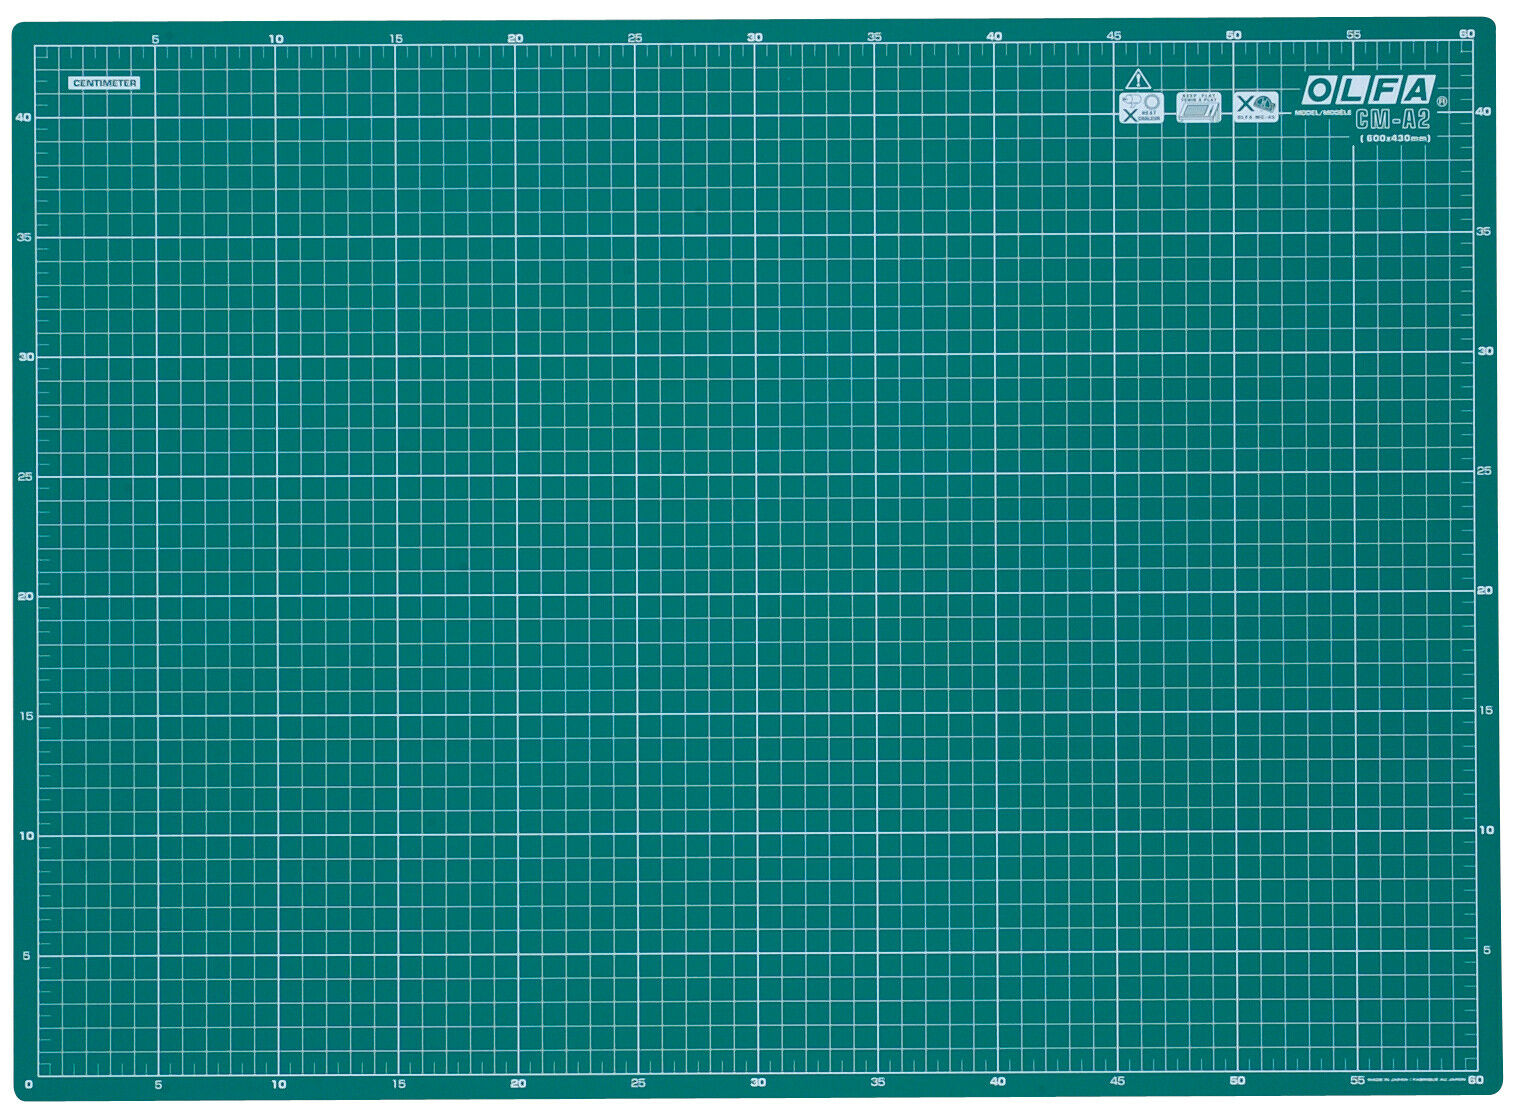 Cutting Mat A2 (45x60cm) Green